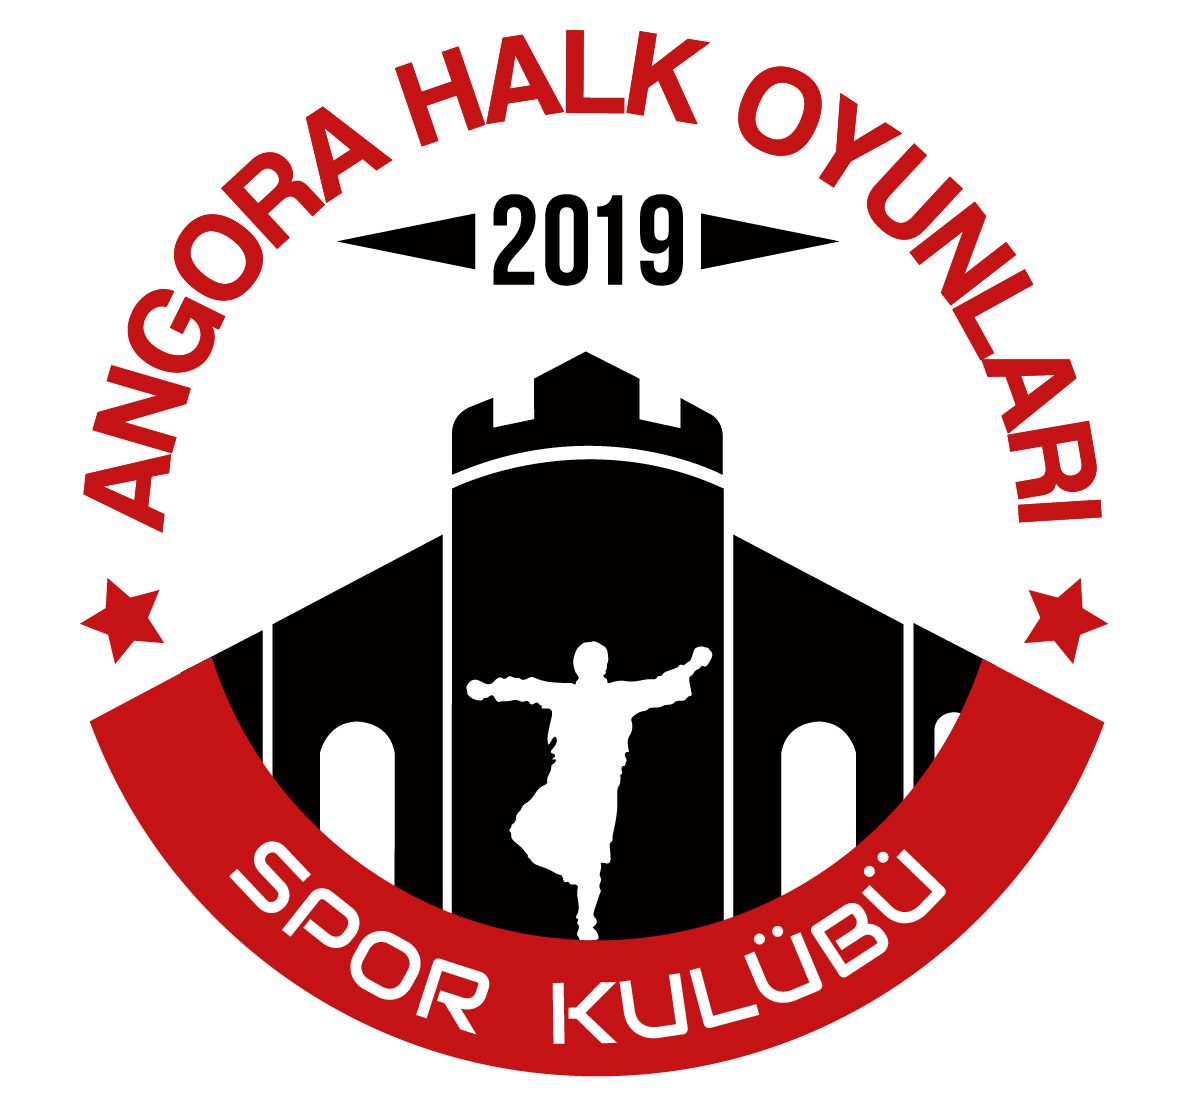 Angora Halk Oyunları Spor Kulübü